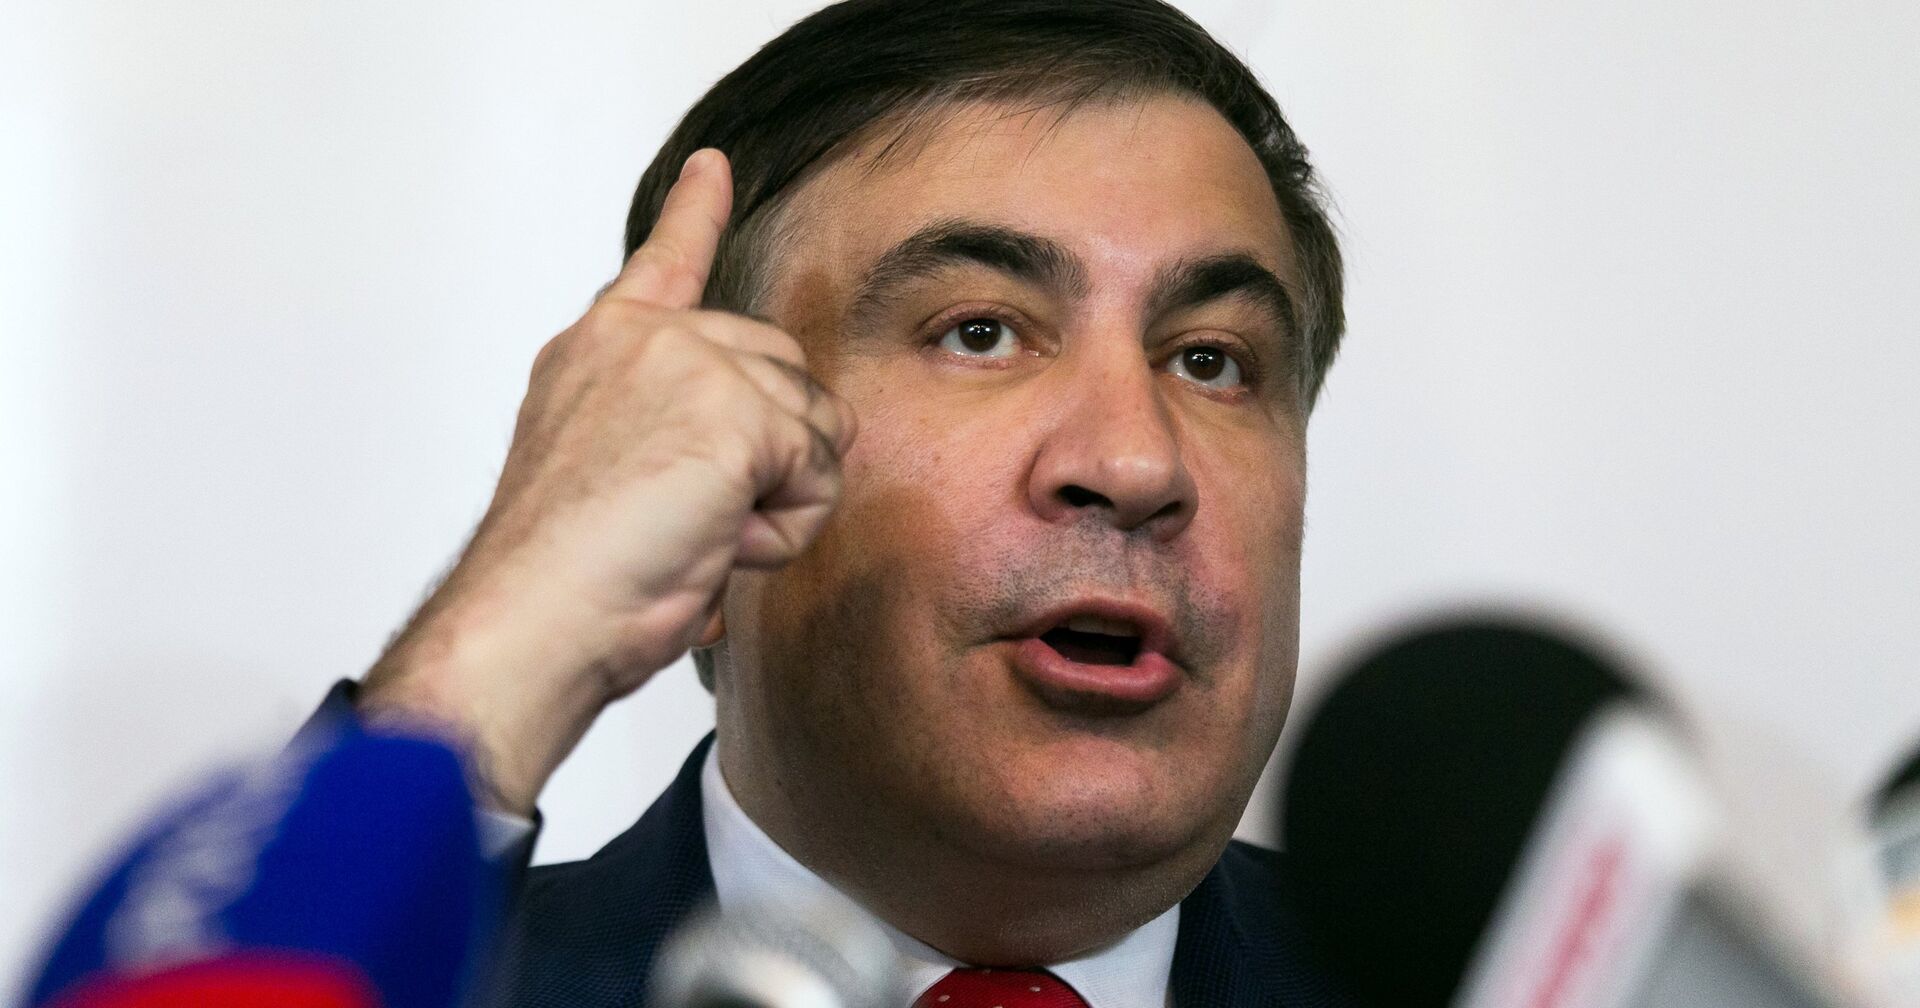 Михаил Саакашвили во время пресс-конференции в Варшаве. 13 февраля 2018 - ИноСМИ, 1920, 20.07.2021